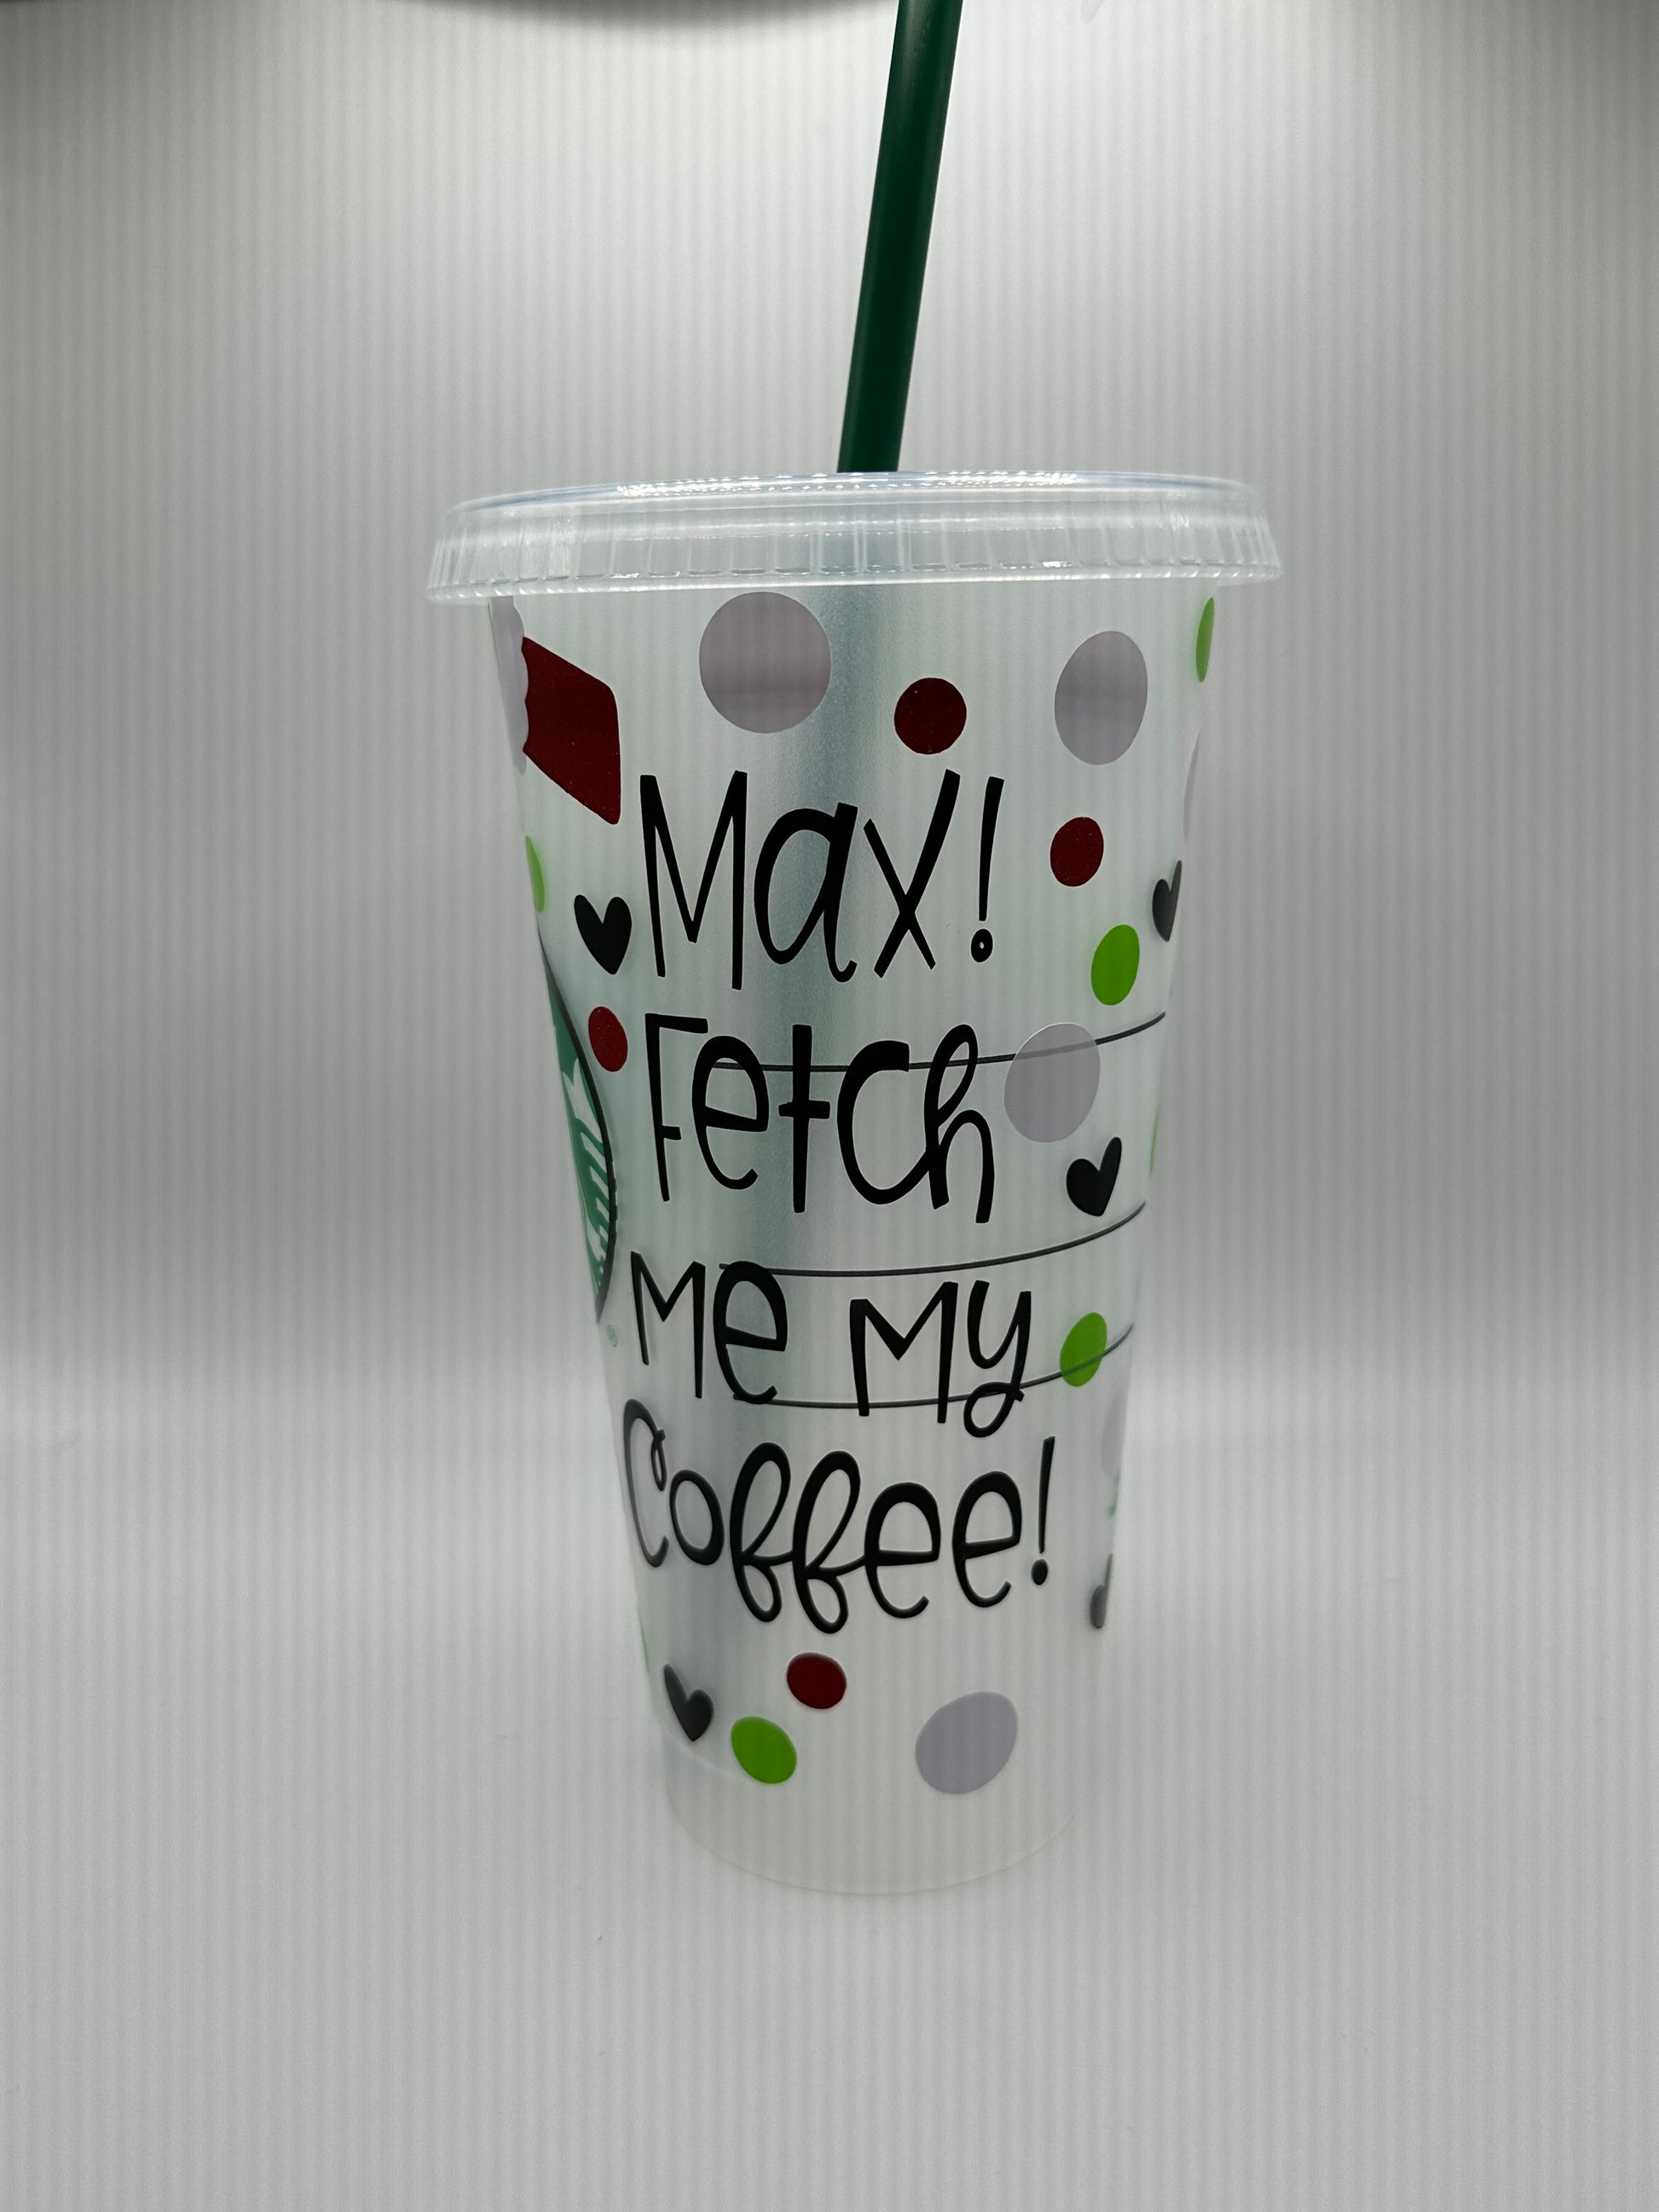 Grinch Starbucks Reusable Cup – Nightshiftcraftingco